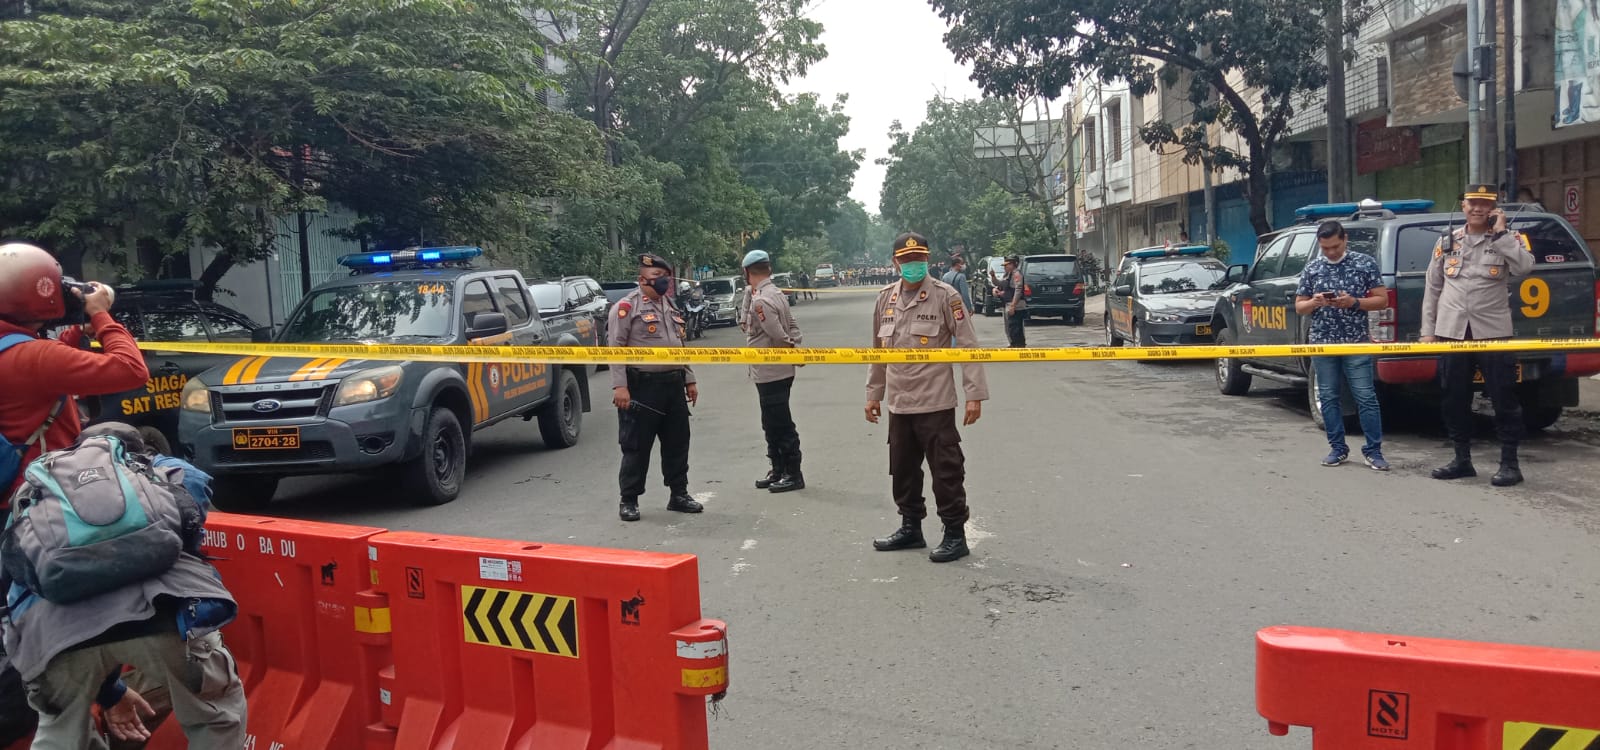 AKSI TEROR: Situasi dan kondisi terkini pasca bom bunuh diri di Polsek Astanaanyar, Kota Bandung. (SANDI NUGRAHA/JABAREKSPRES)